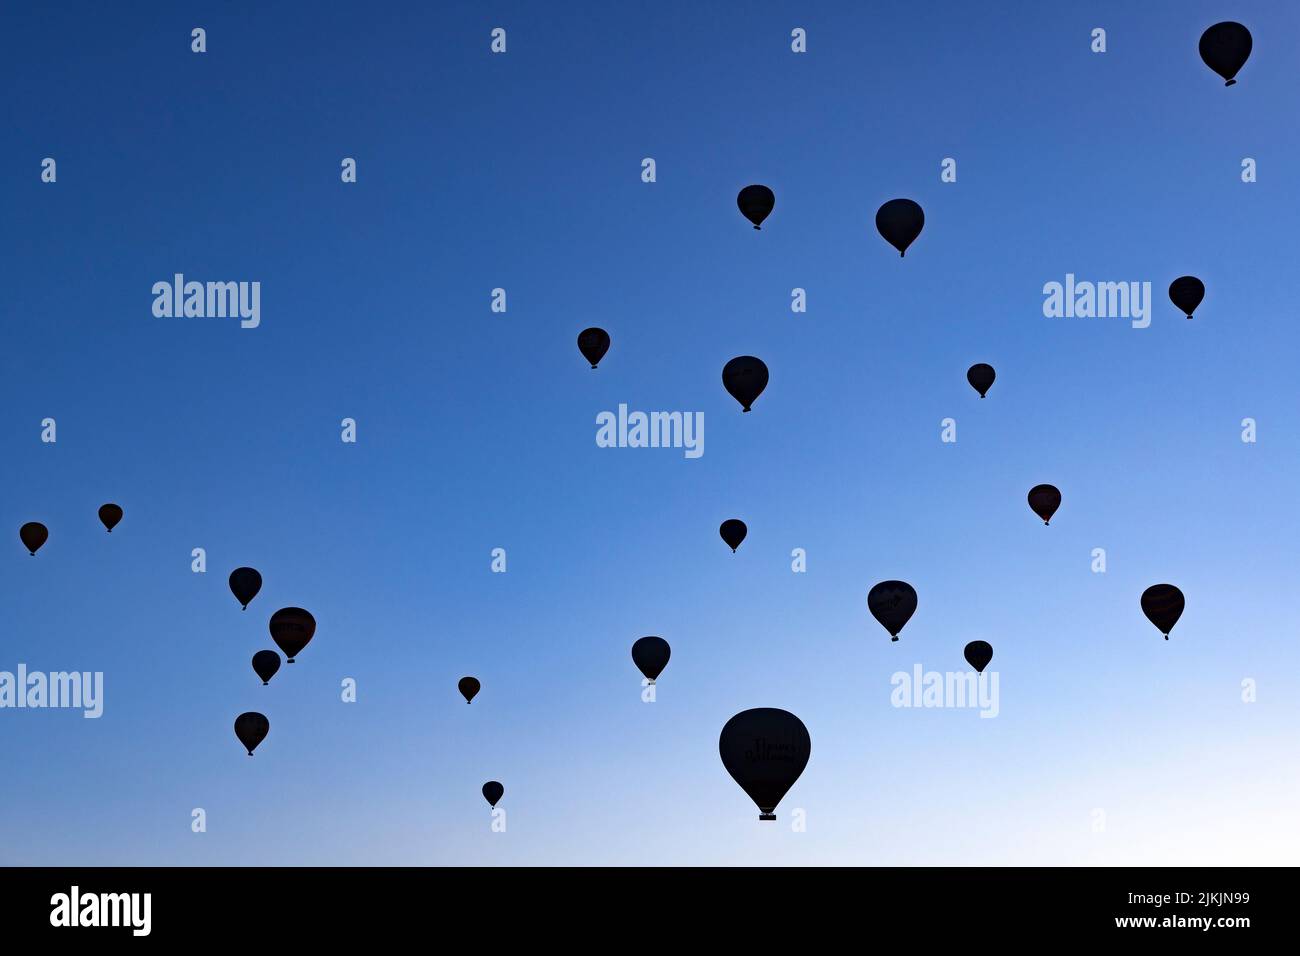 silhouettes de ballons à air chaud qui s'élève dans le ciel bleu Banque D'Images